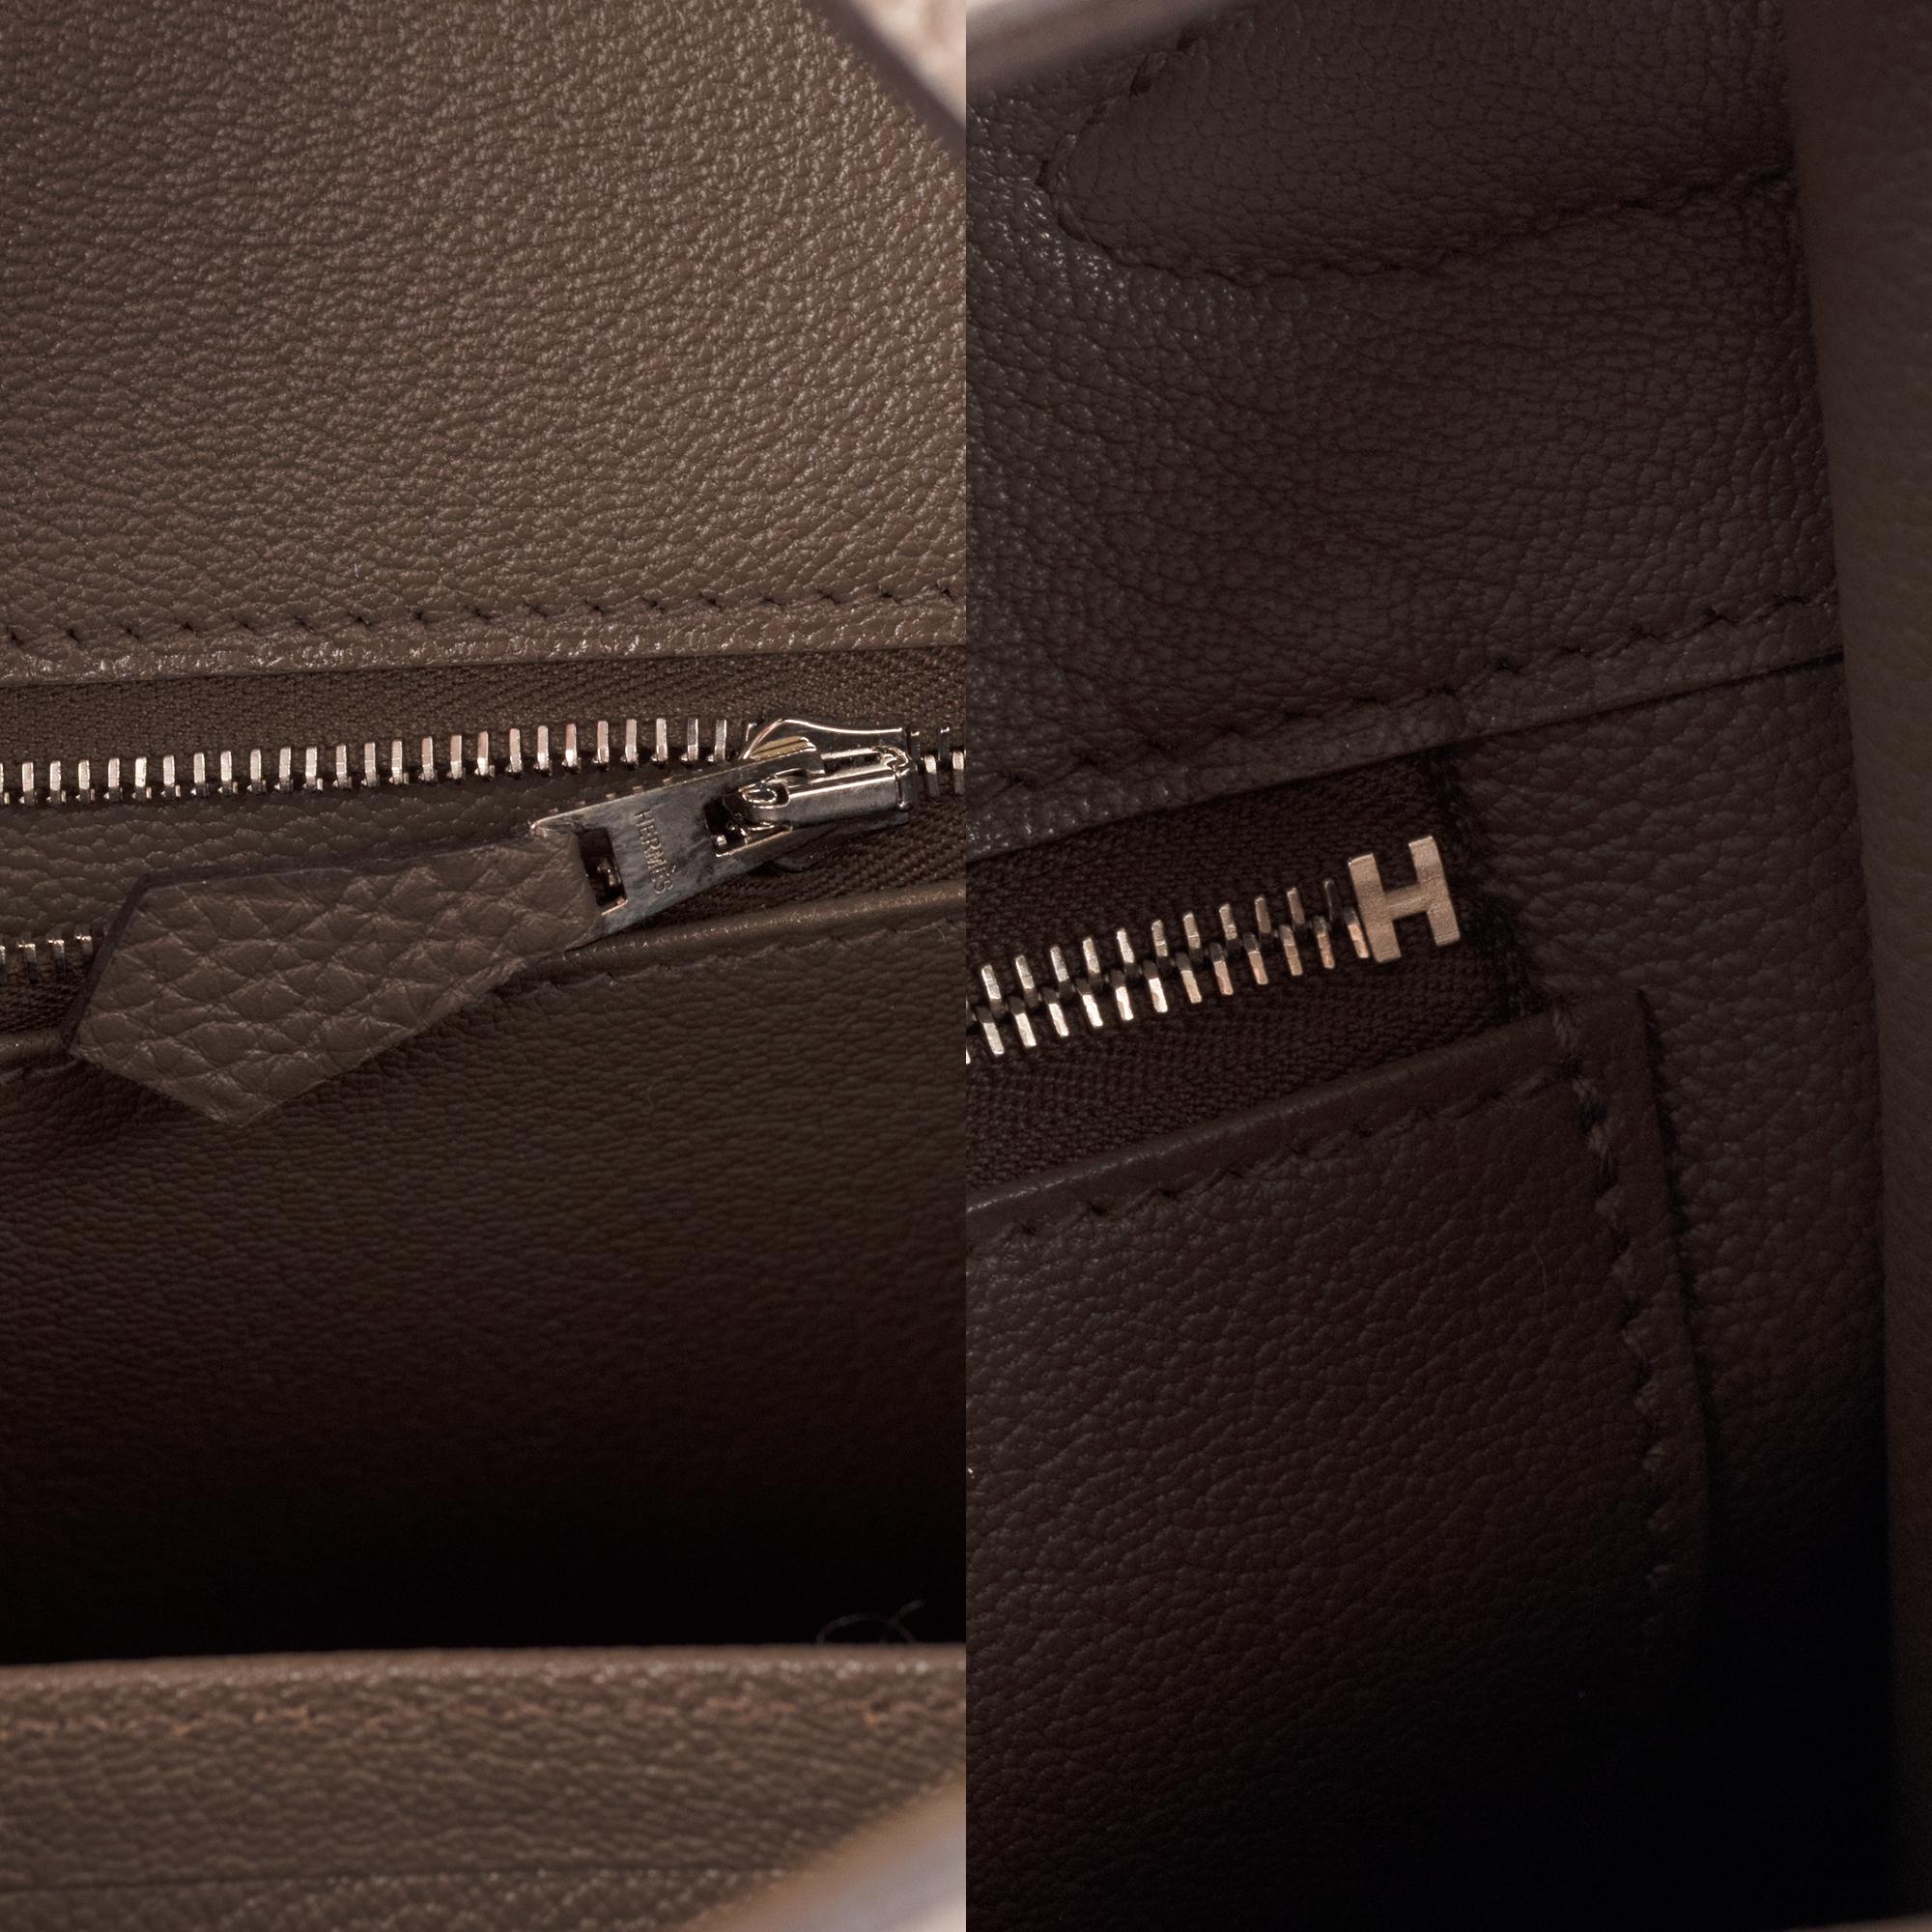 Hermès Birkin 35 Handtasche aus Togo-Leder in Taupe-Farbe und silberner Hardware! 4